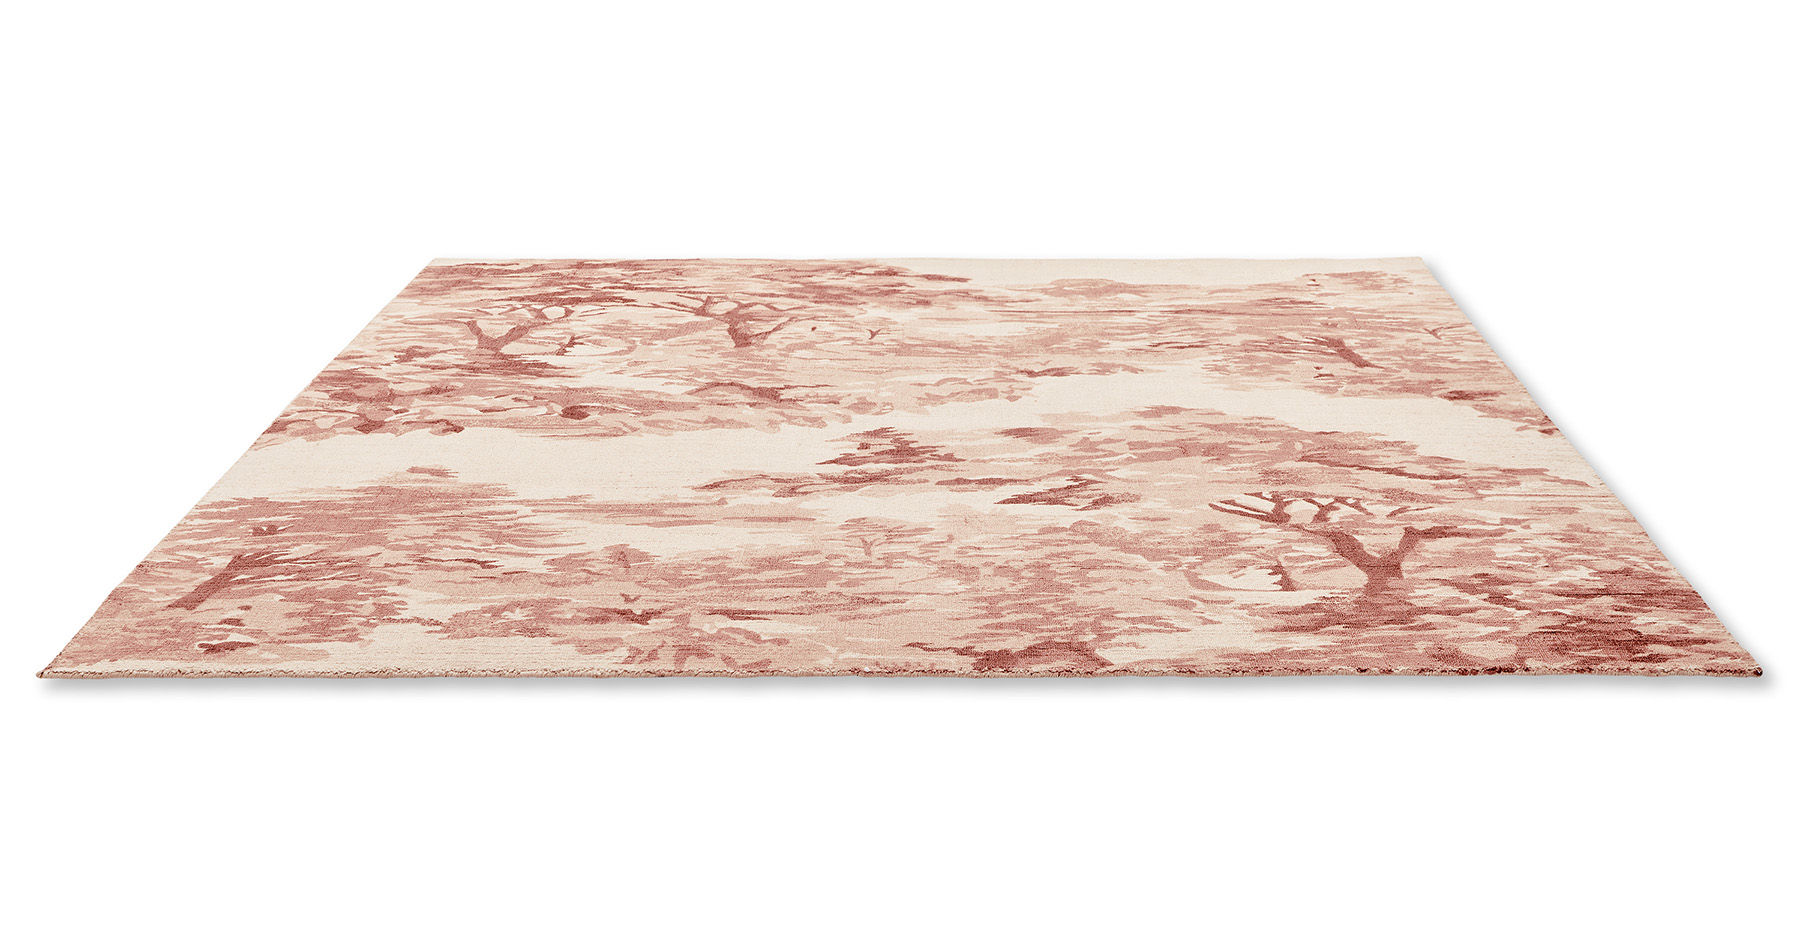 Landscape Light Pink Designer Rug ☞ Size: 5' 7" x 8' (170 x 240 cm)